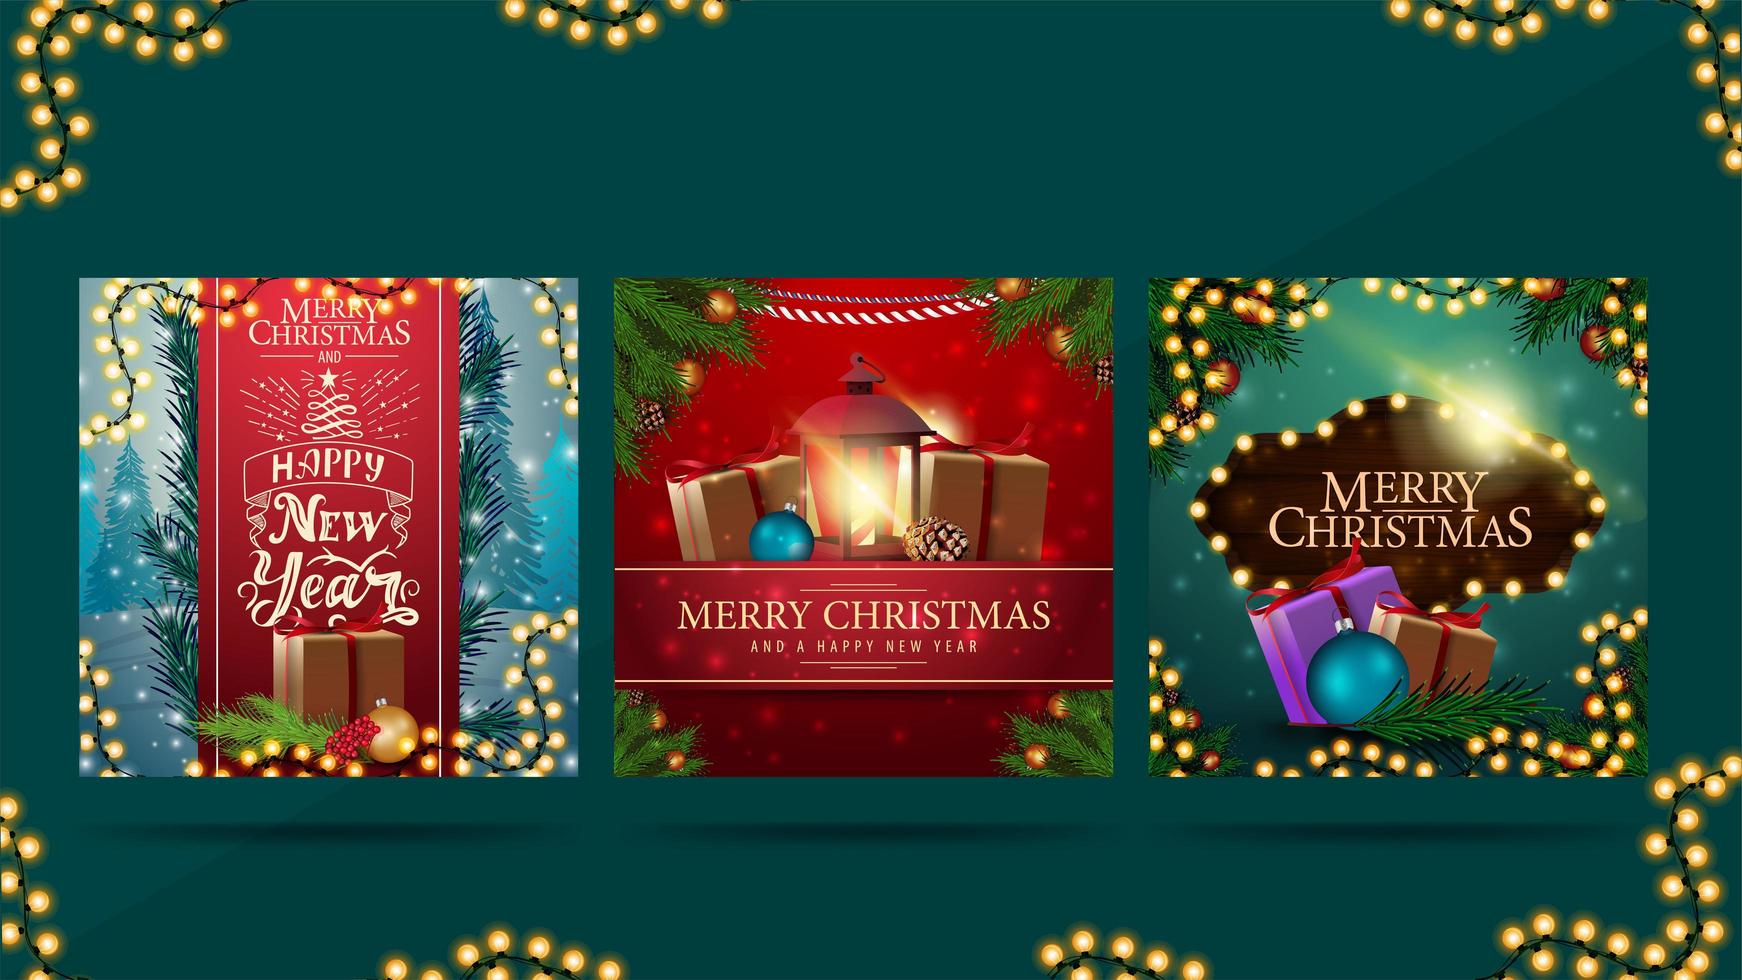 god jul och gott nytt år, hälsning fyrkantiga vykort med julklappar, kransar, ram med grenar och vackra bokstäver vektor